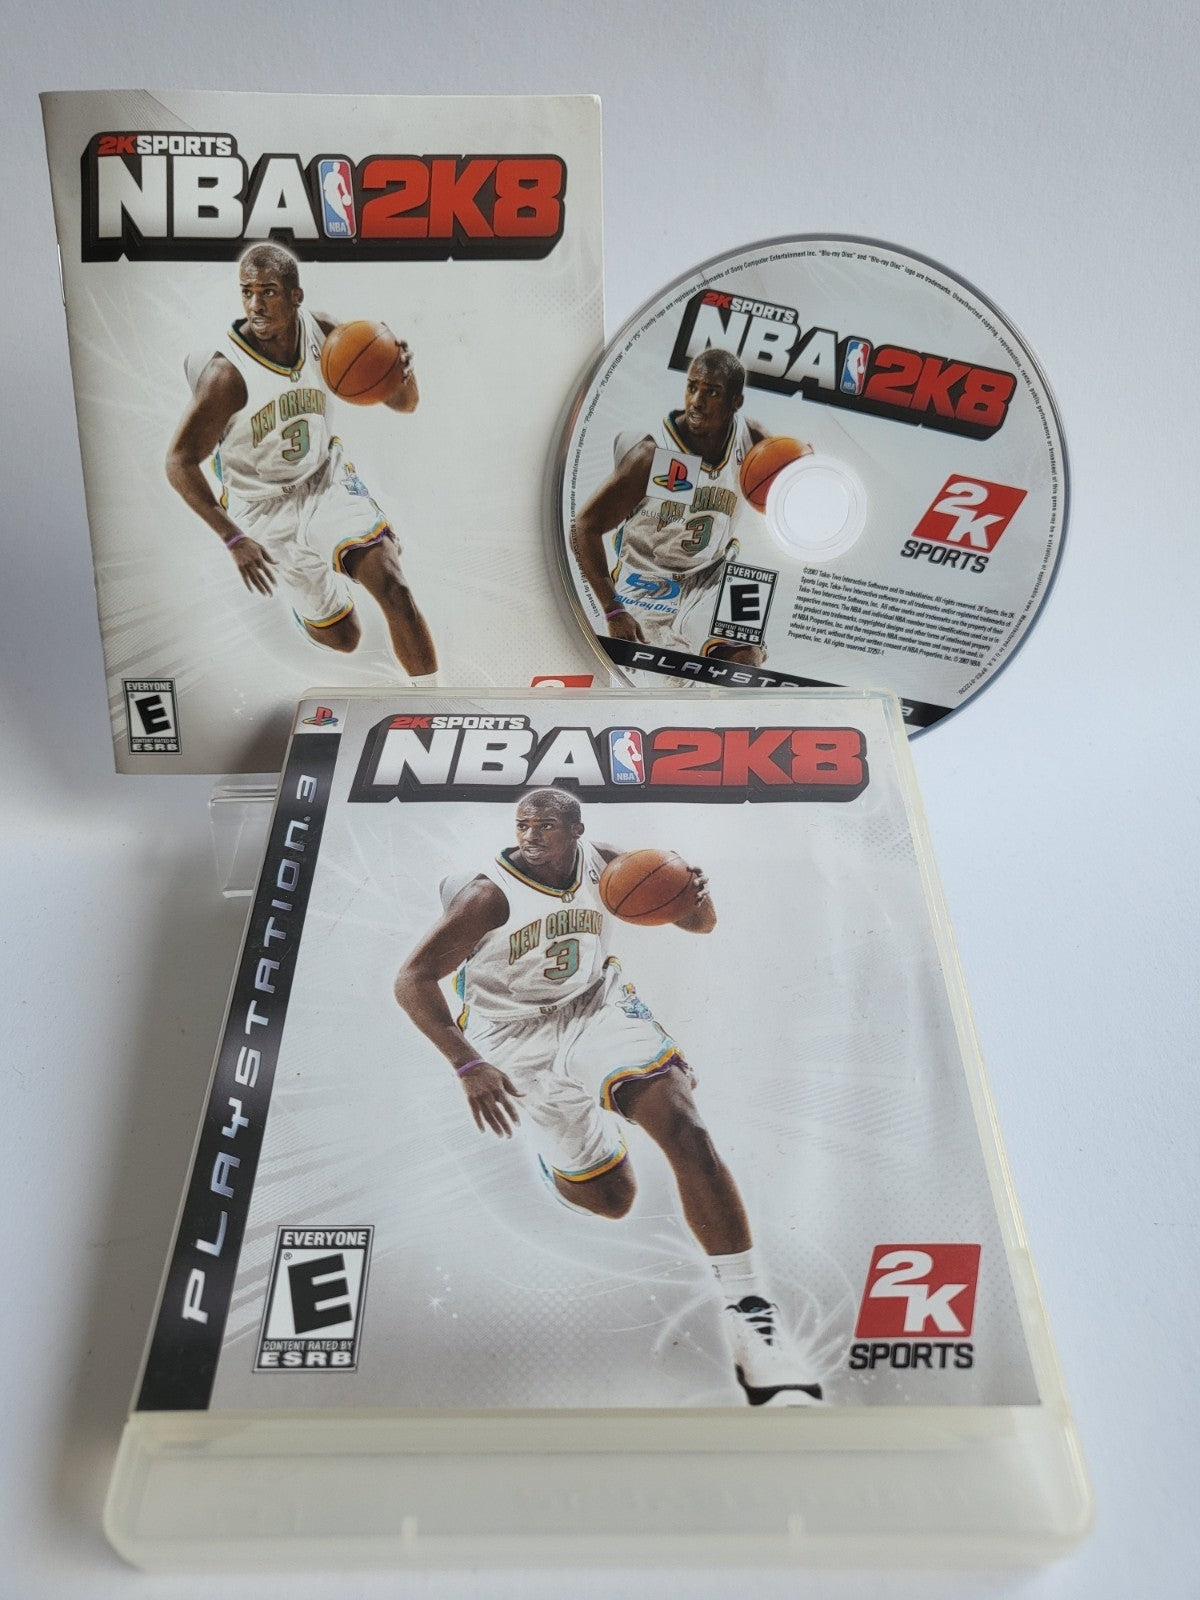 NBA 2K8 Playstation 3